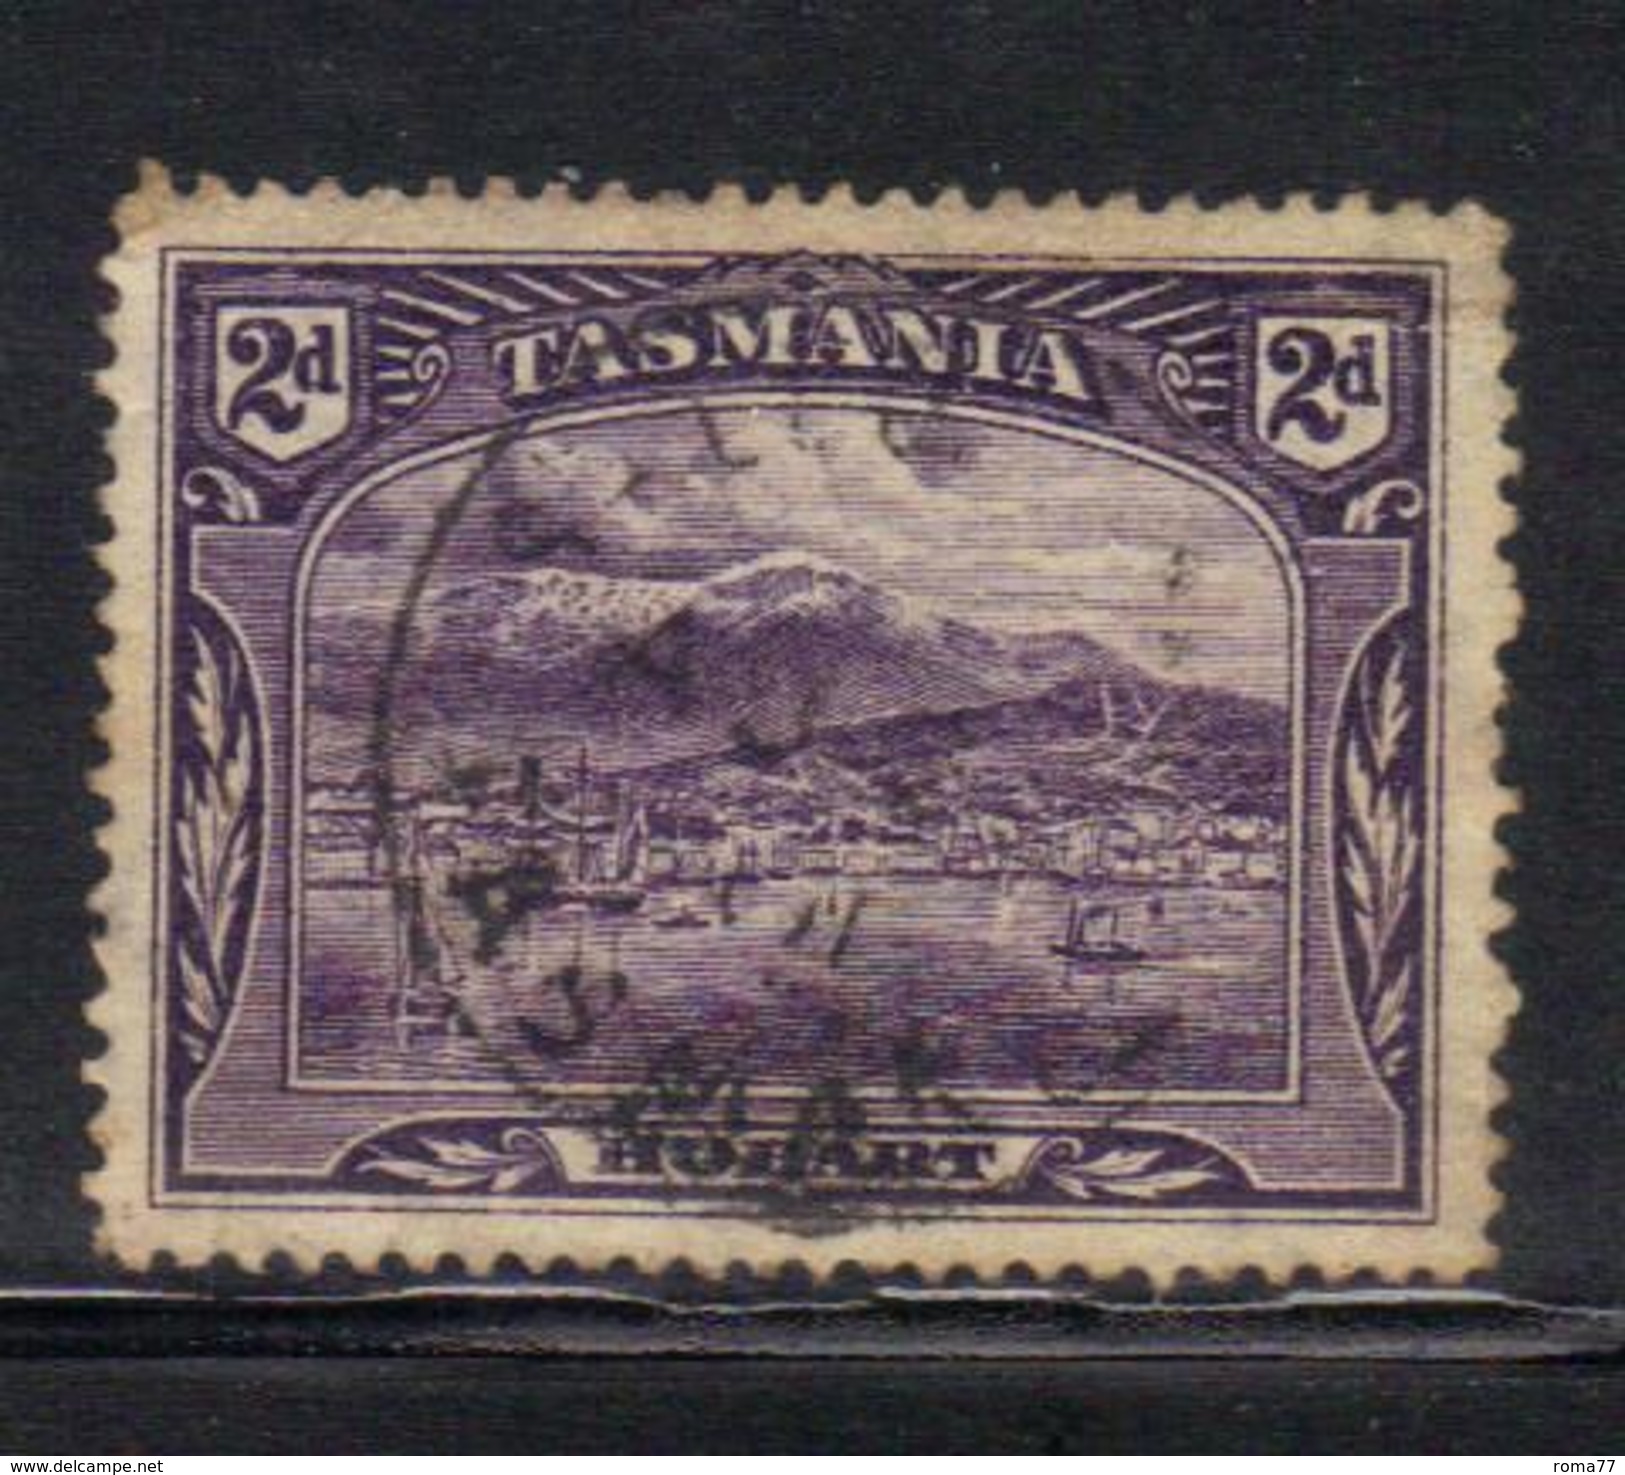 T1906 - TASMANIA 2 Pence Wmk TAS Used - Used Stamps